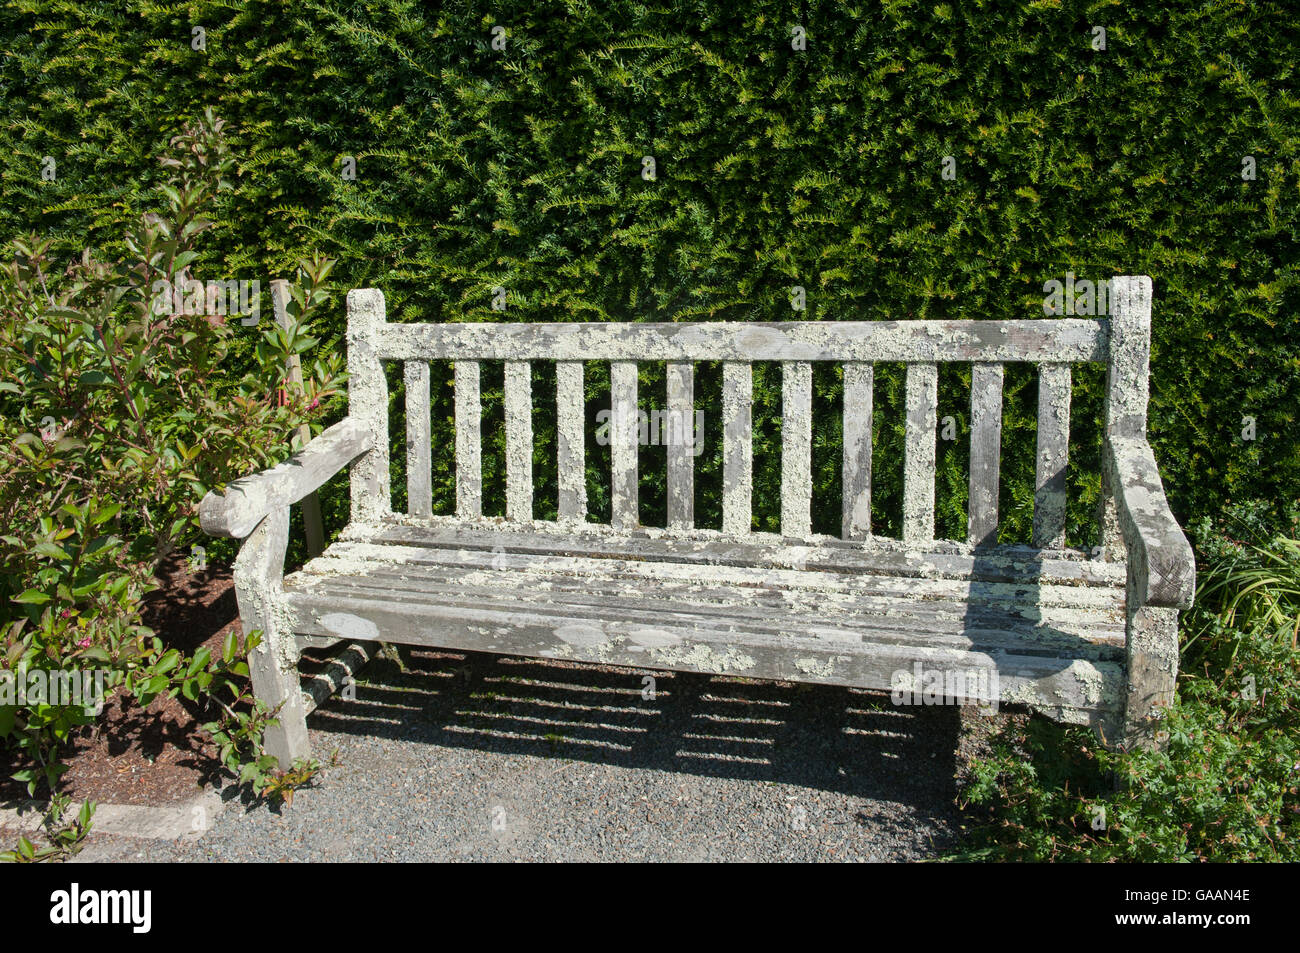 Sedile in legno coperto di licheni Foliose nel giardino di RHS Rosemoor, Devon, Inghilterra, Regno Unito Foto Stock